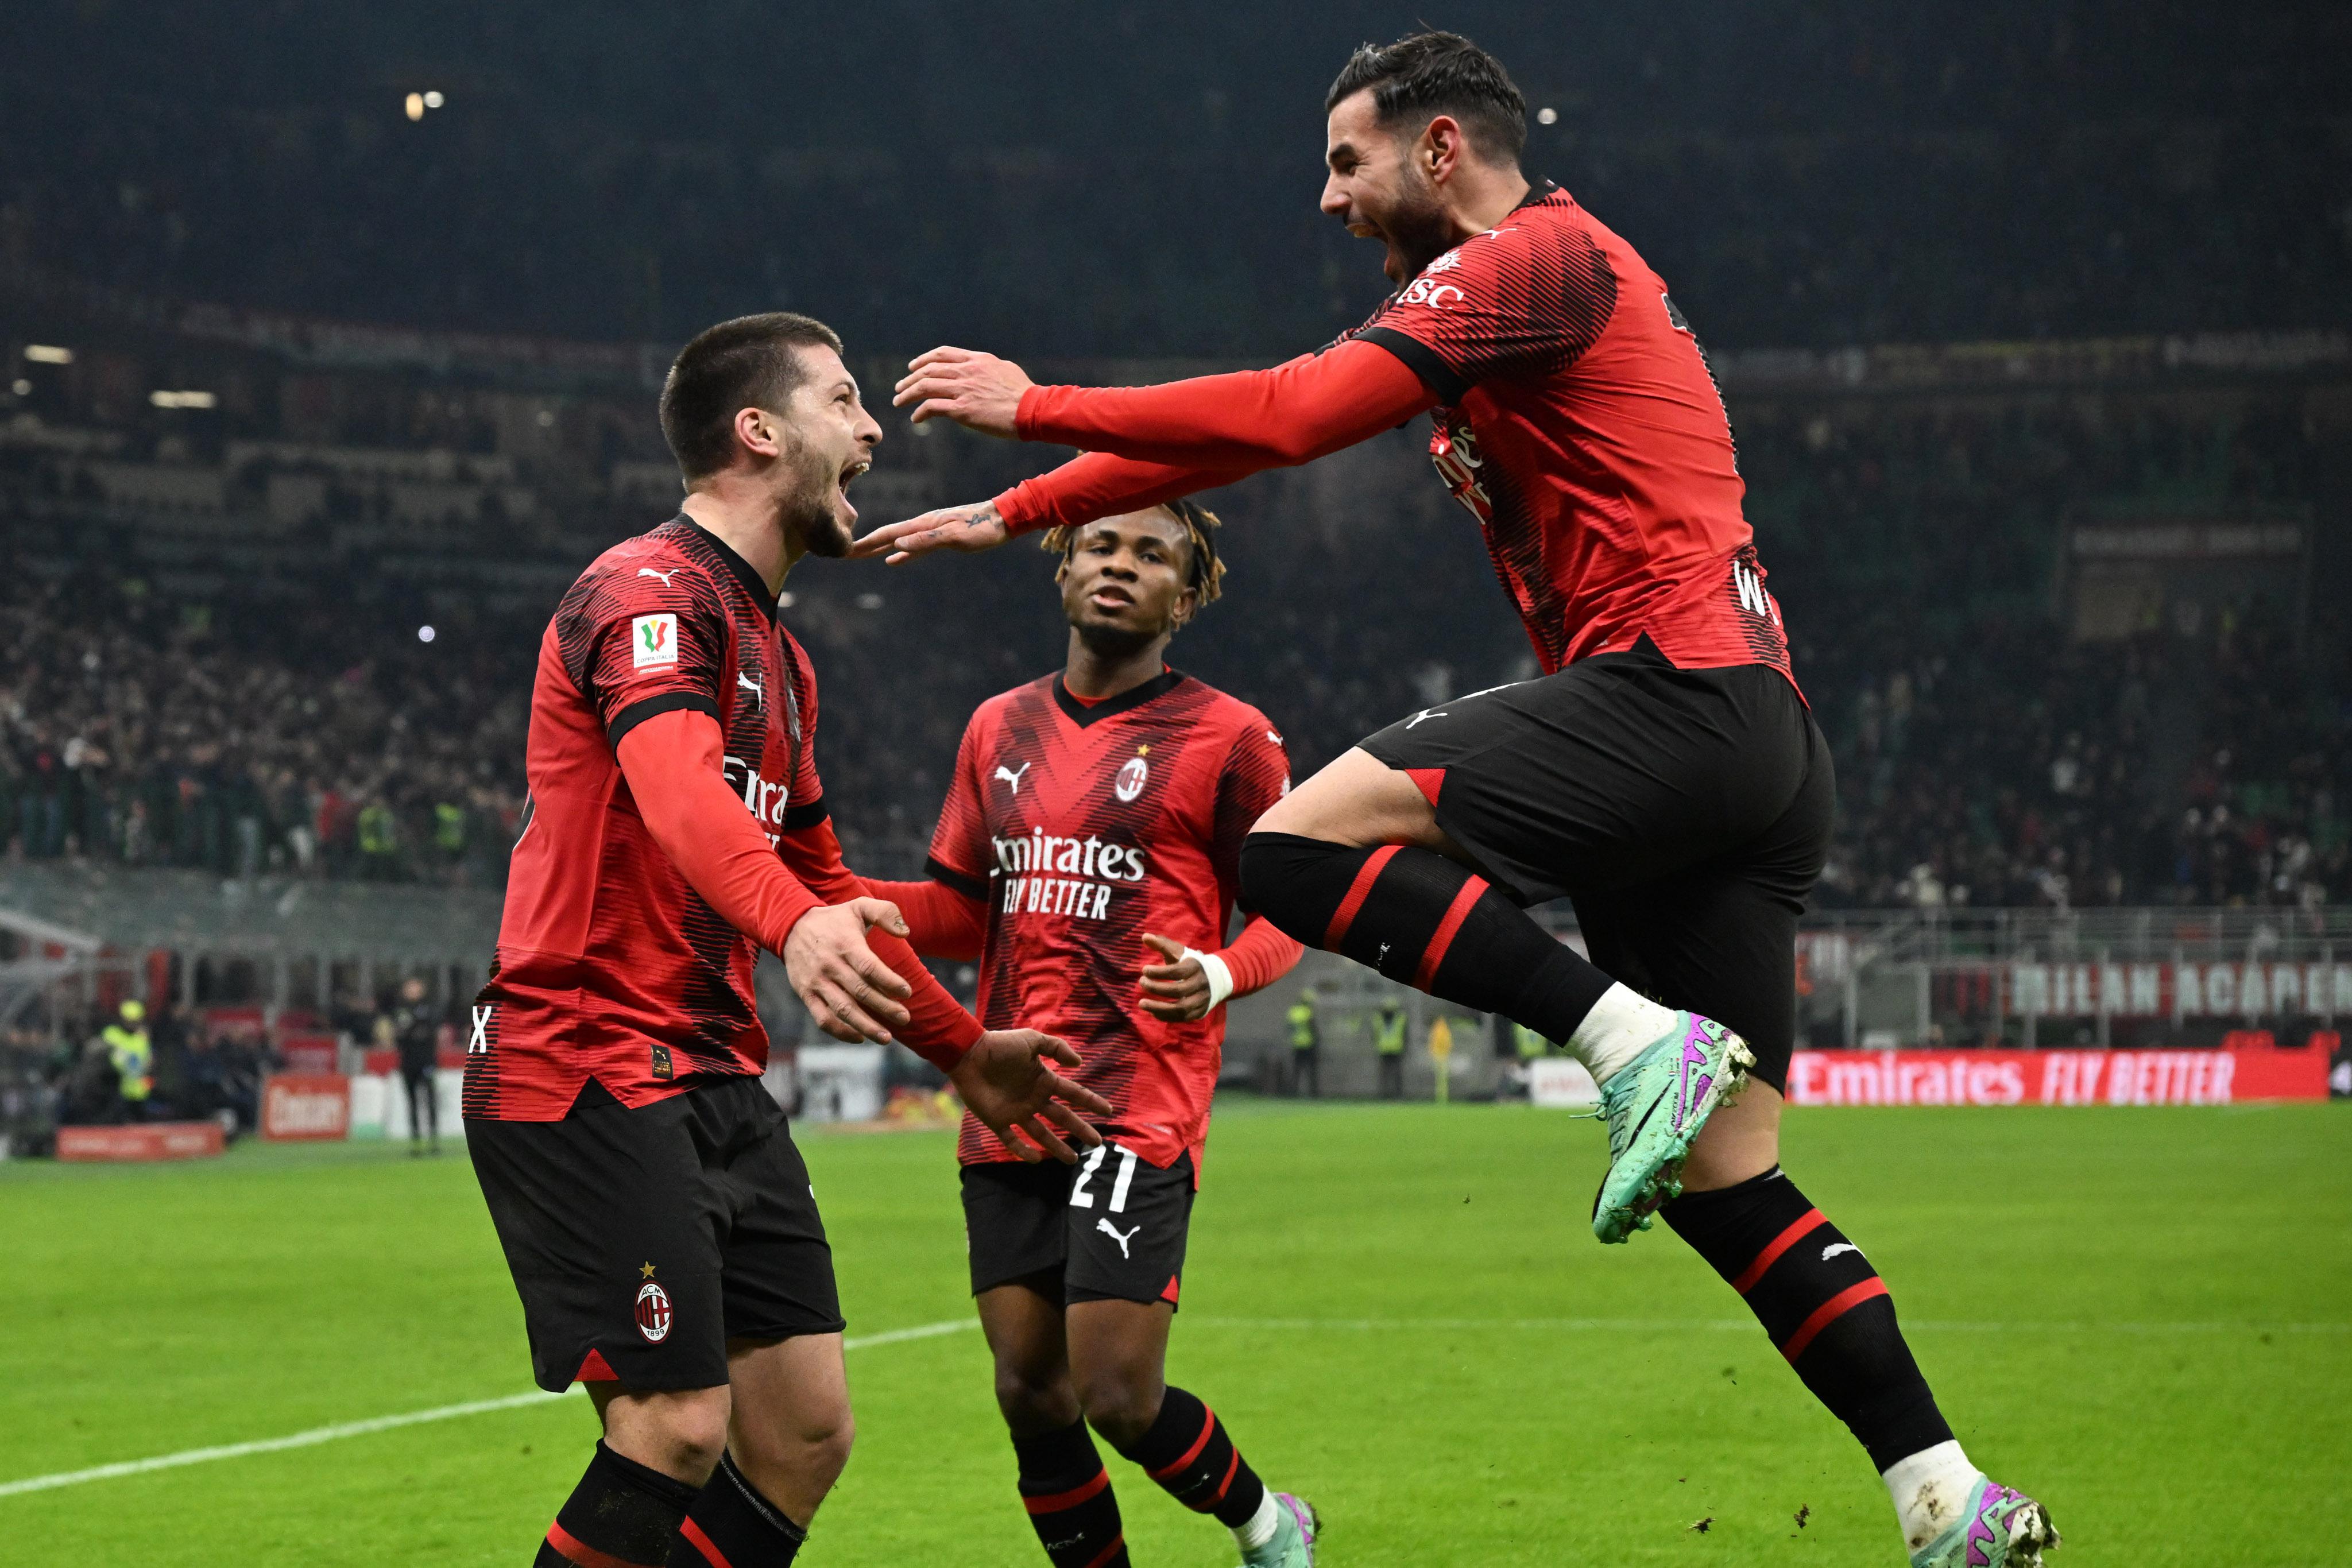 Milan – Cagliari 4-1 Pioli Avanti in Coppa Italia: risultati e classifica